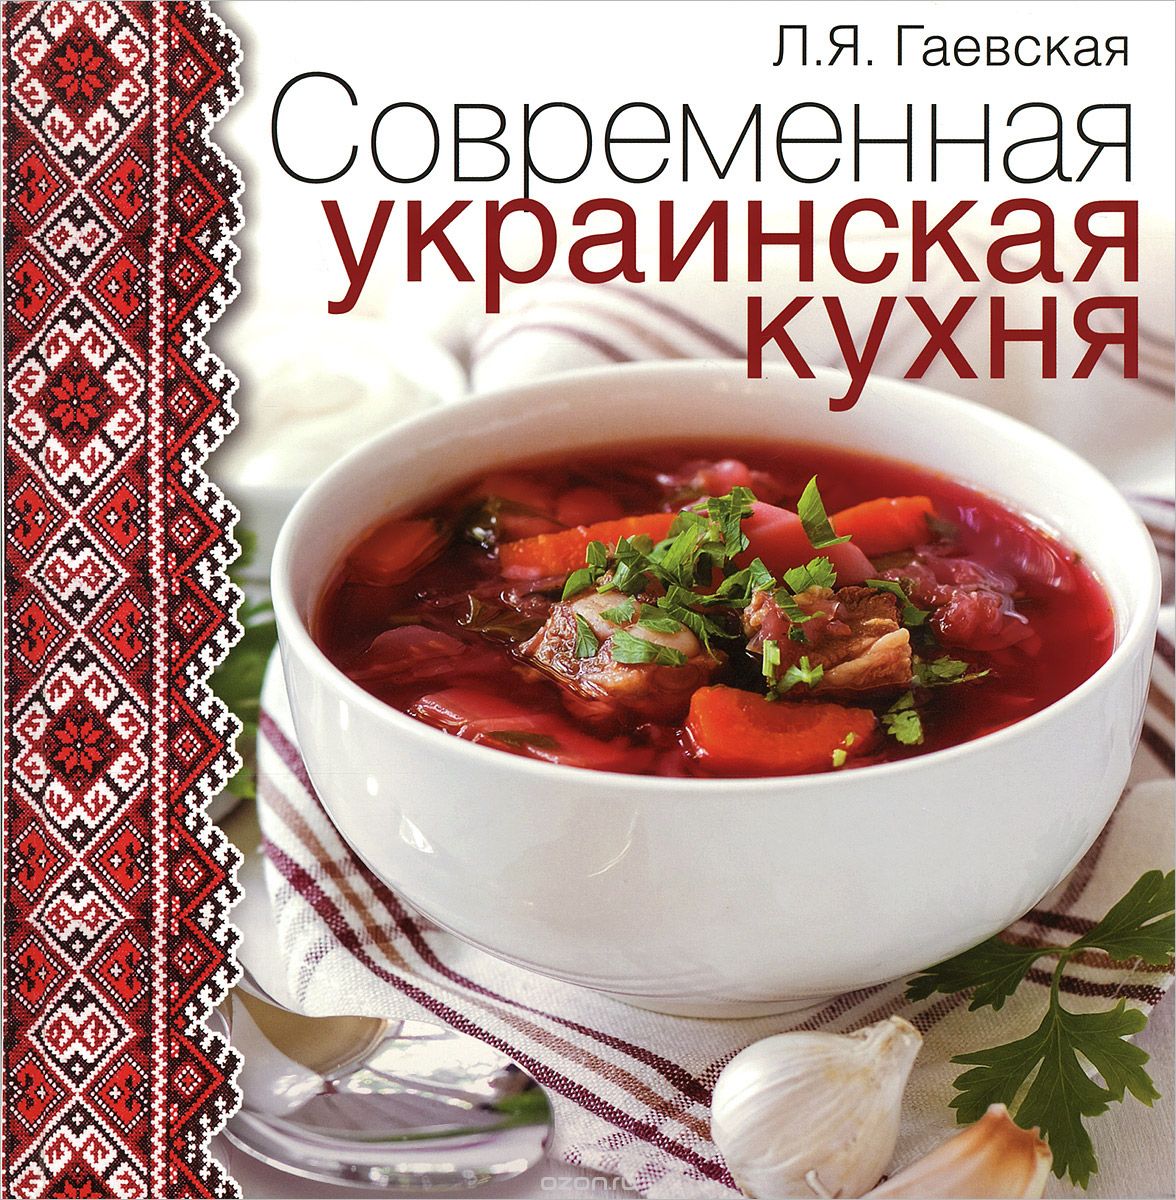 Скачать книгу "Современная украинская кухня, Л. Я. Гаевская"